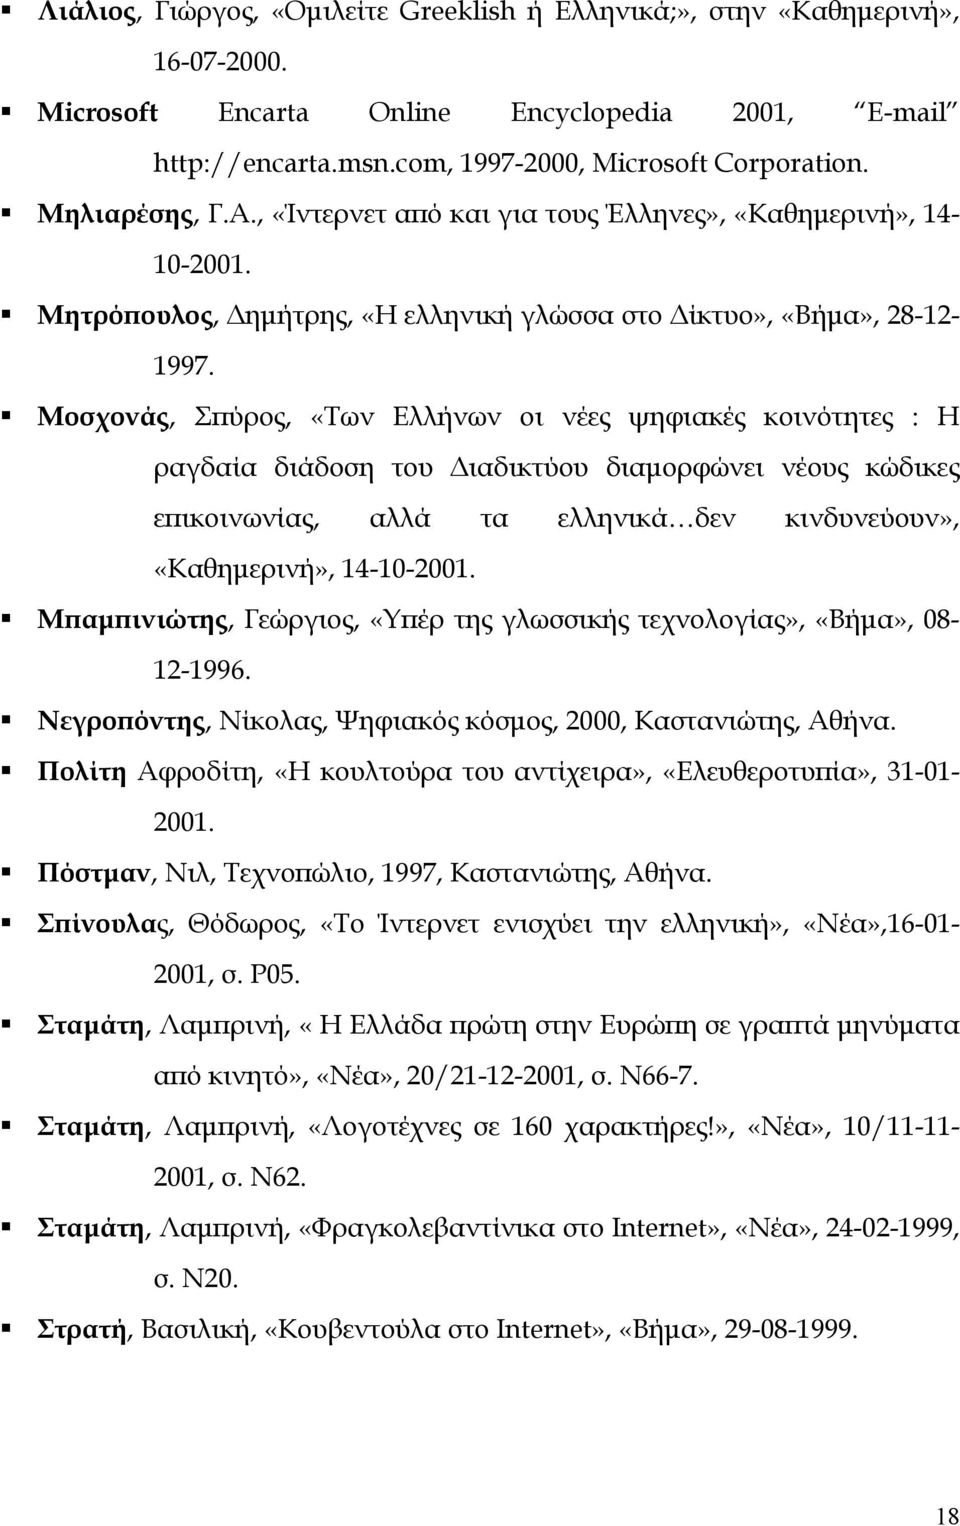 Μοσχονάς, Σπύρος, «Των Ελλήνων οι νέες ψηφιακές κοινότητες : Η ραγδαία διάδοση του ιαδικτύου διαµορφώνει νέους κώδικες επικοινωνίας, αλλά τα ελληνικά δεν κινδυνεύουν», «Καθηµερινή», 14-10-2001.